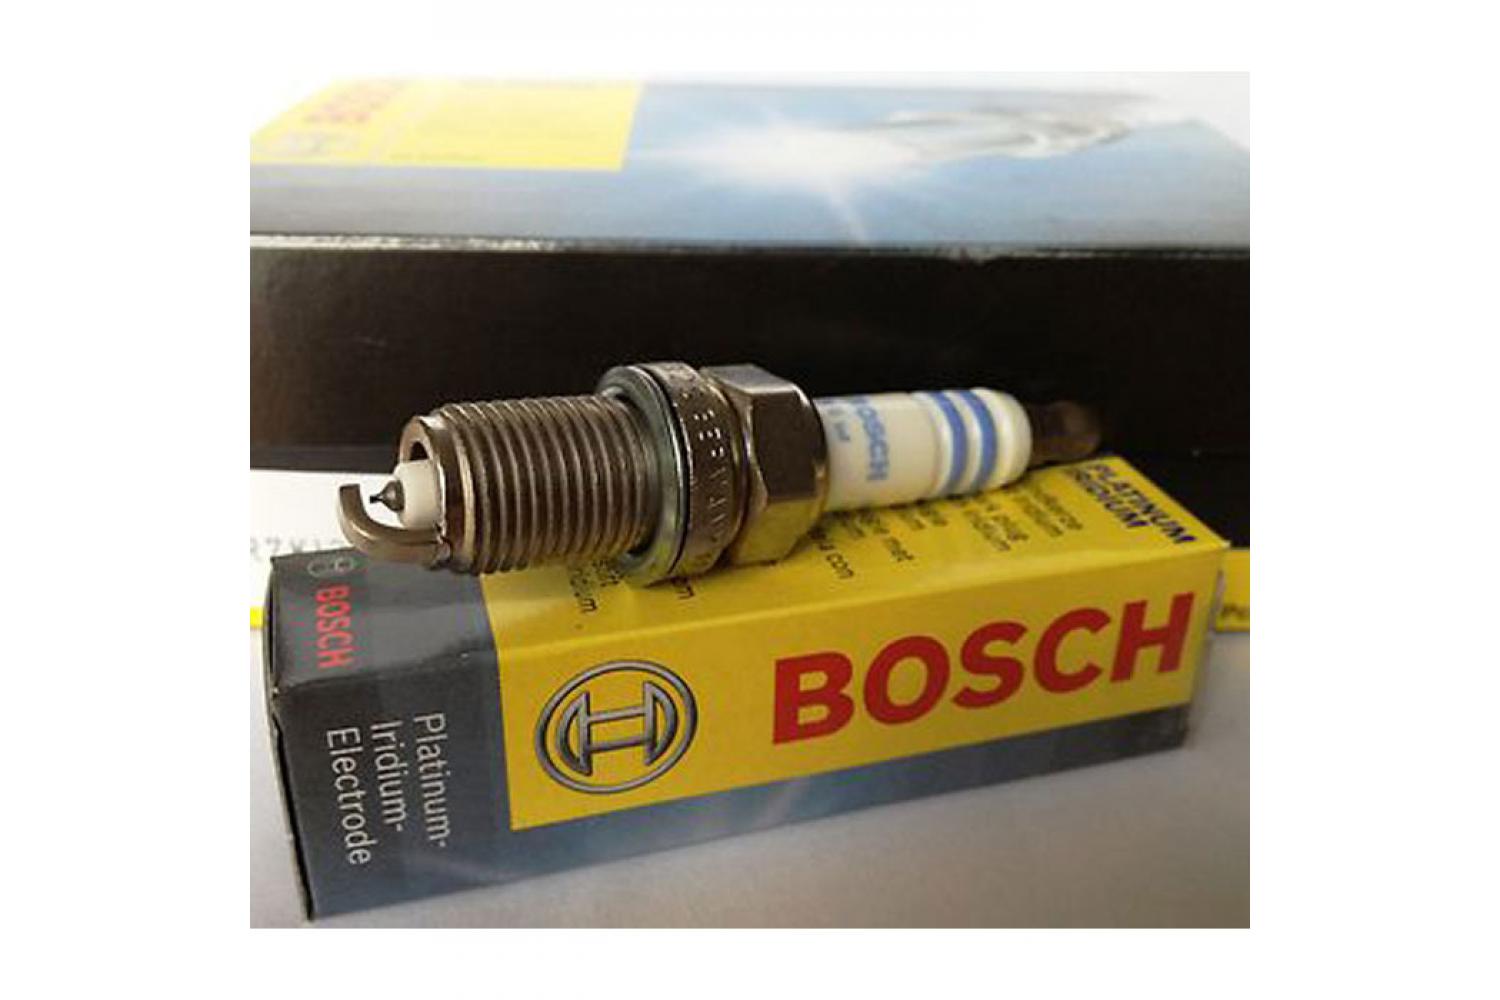 Bosch Zündkerze Platin Iridium, FR 6 KI 332 S für CNG / LPG